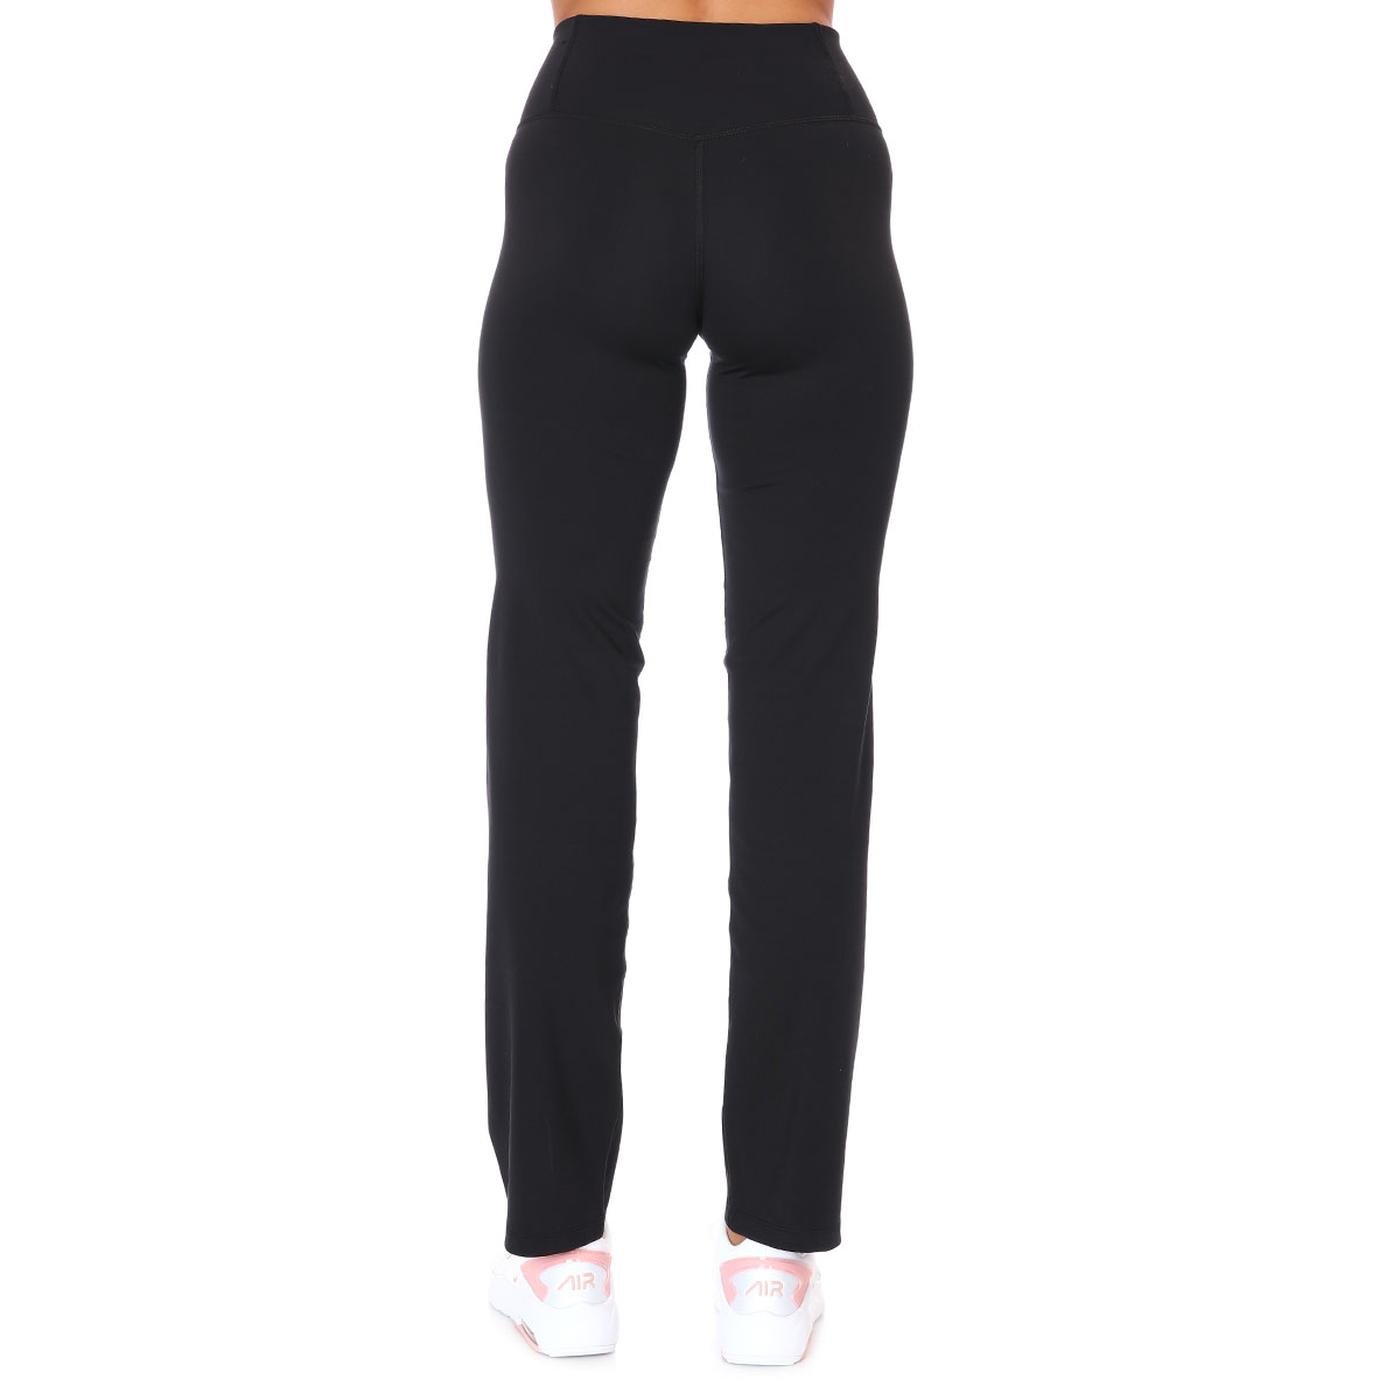 Женские спортивные штаны Nike Dri-Fit Pwr Classic Pant Antrenman DM1191-010  для тренировок по цене 7300.0